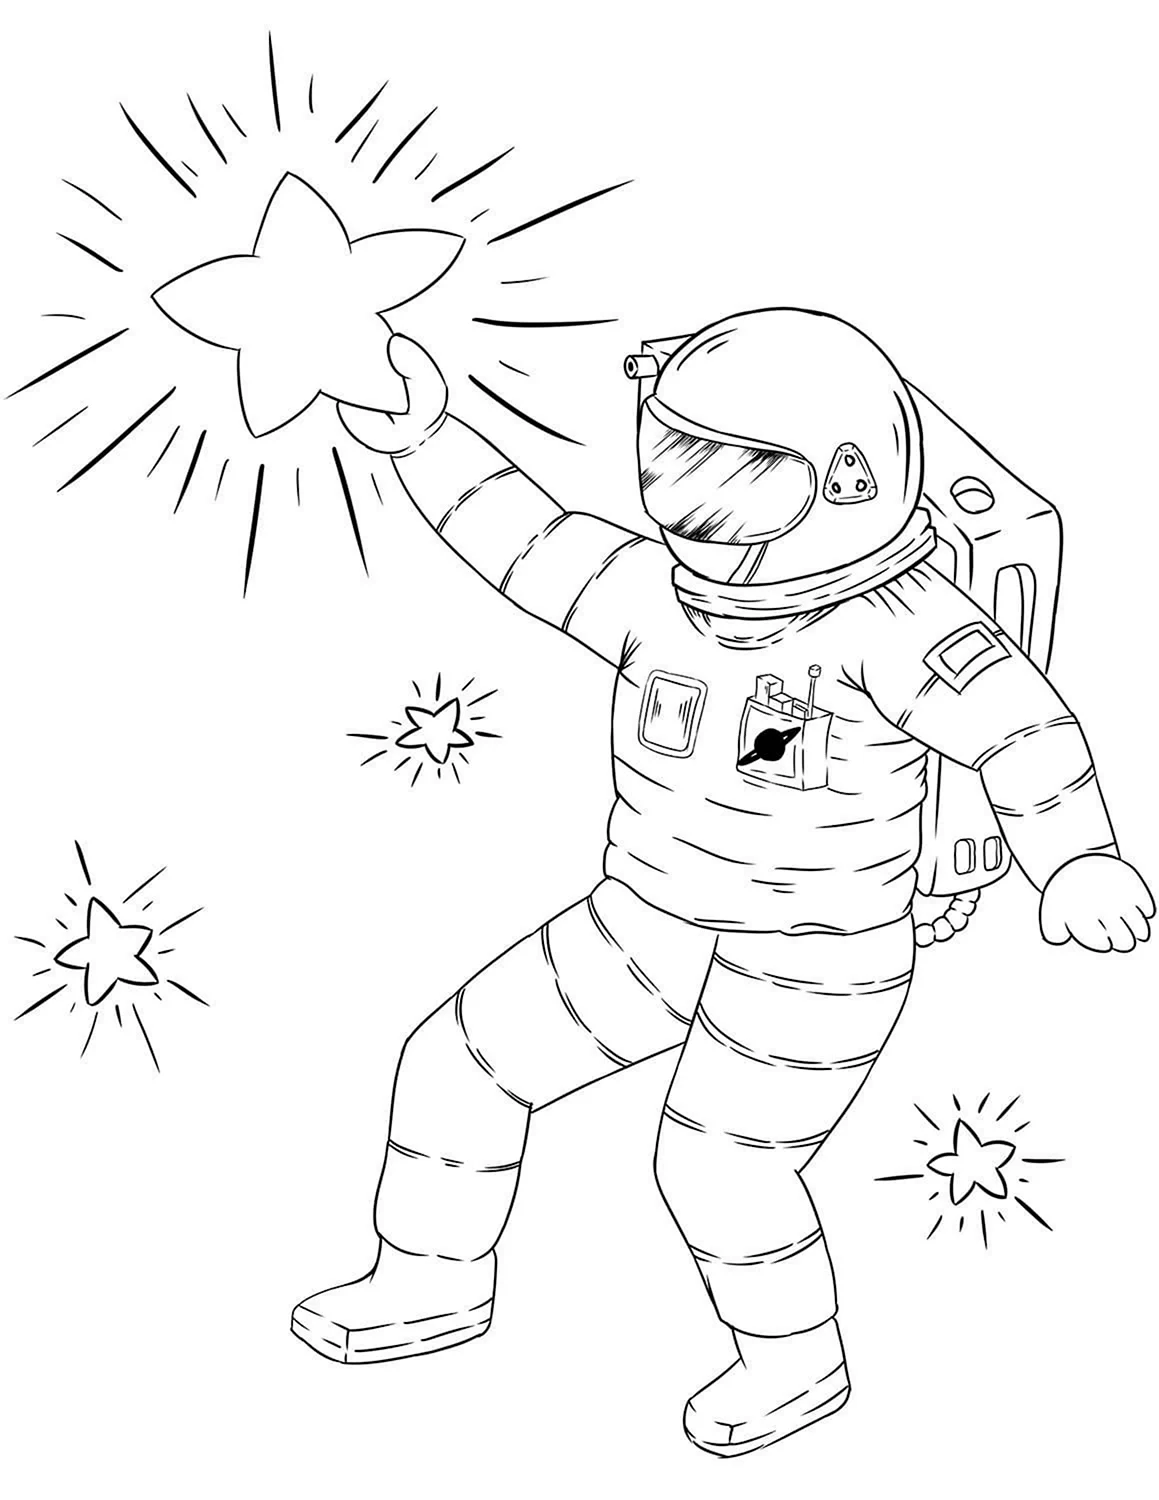 Картинки на день космонавтики для срисовки. Космос раскраска для детей. Космонавт раскраска. Космонавт раскраска для детей. Космонавтика раскраски для детей.